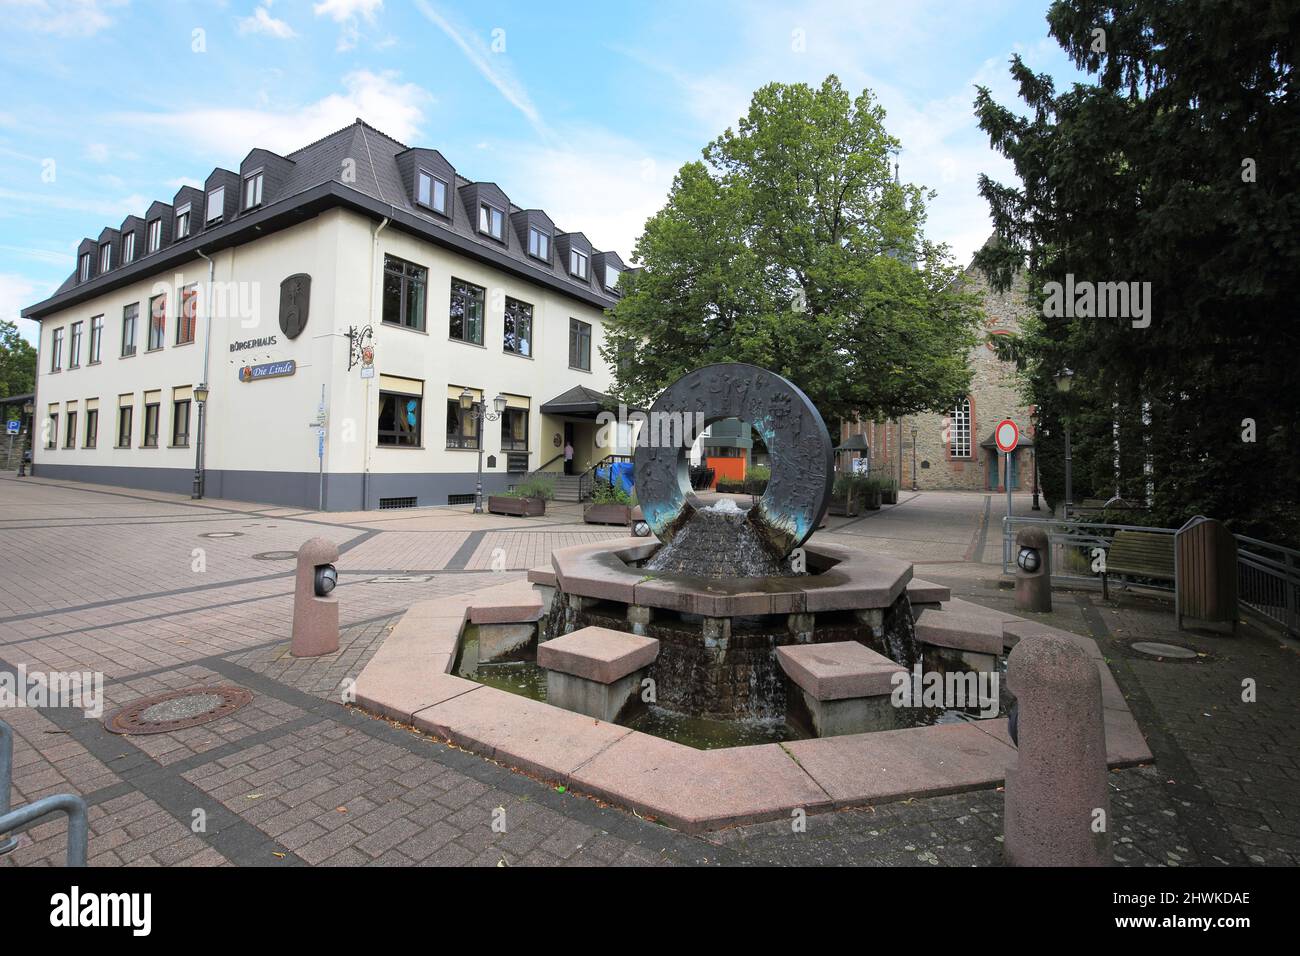 Citizens Fountain, Am Platz an der Linde, in Sulzbach im Taunus, Hesse, Germany Stock Photo